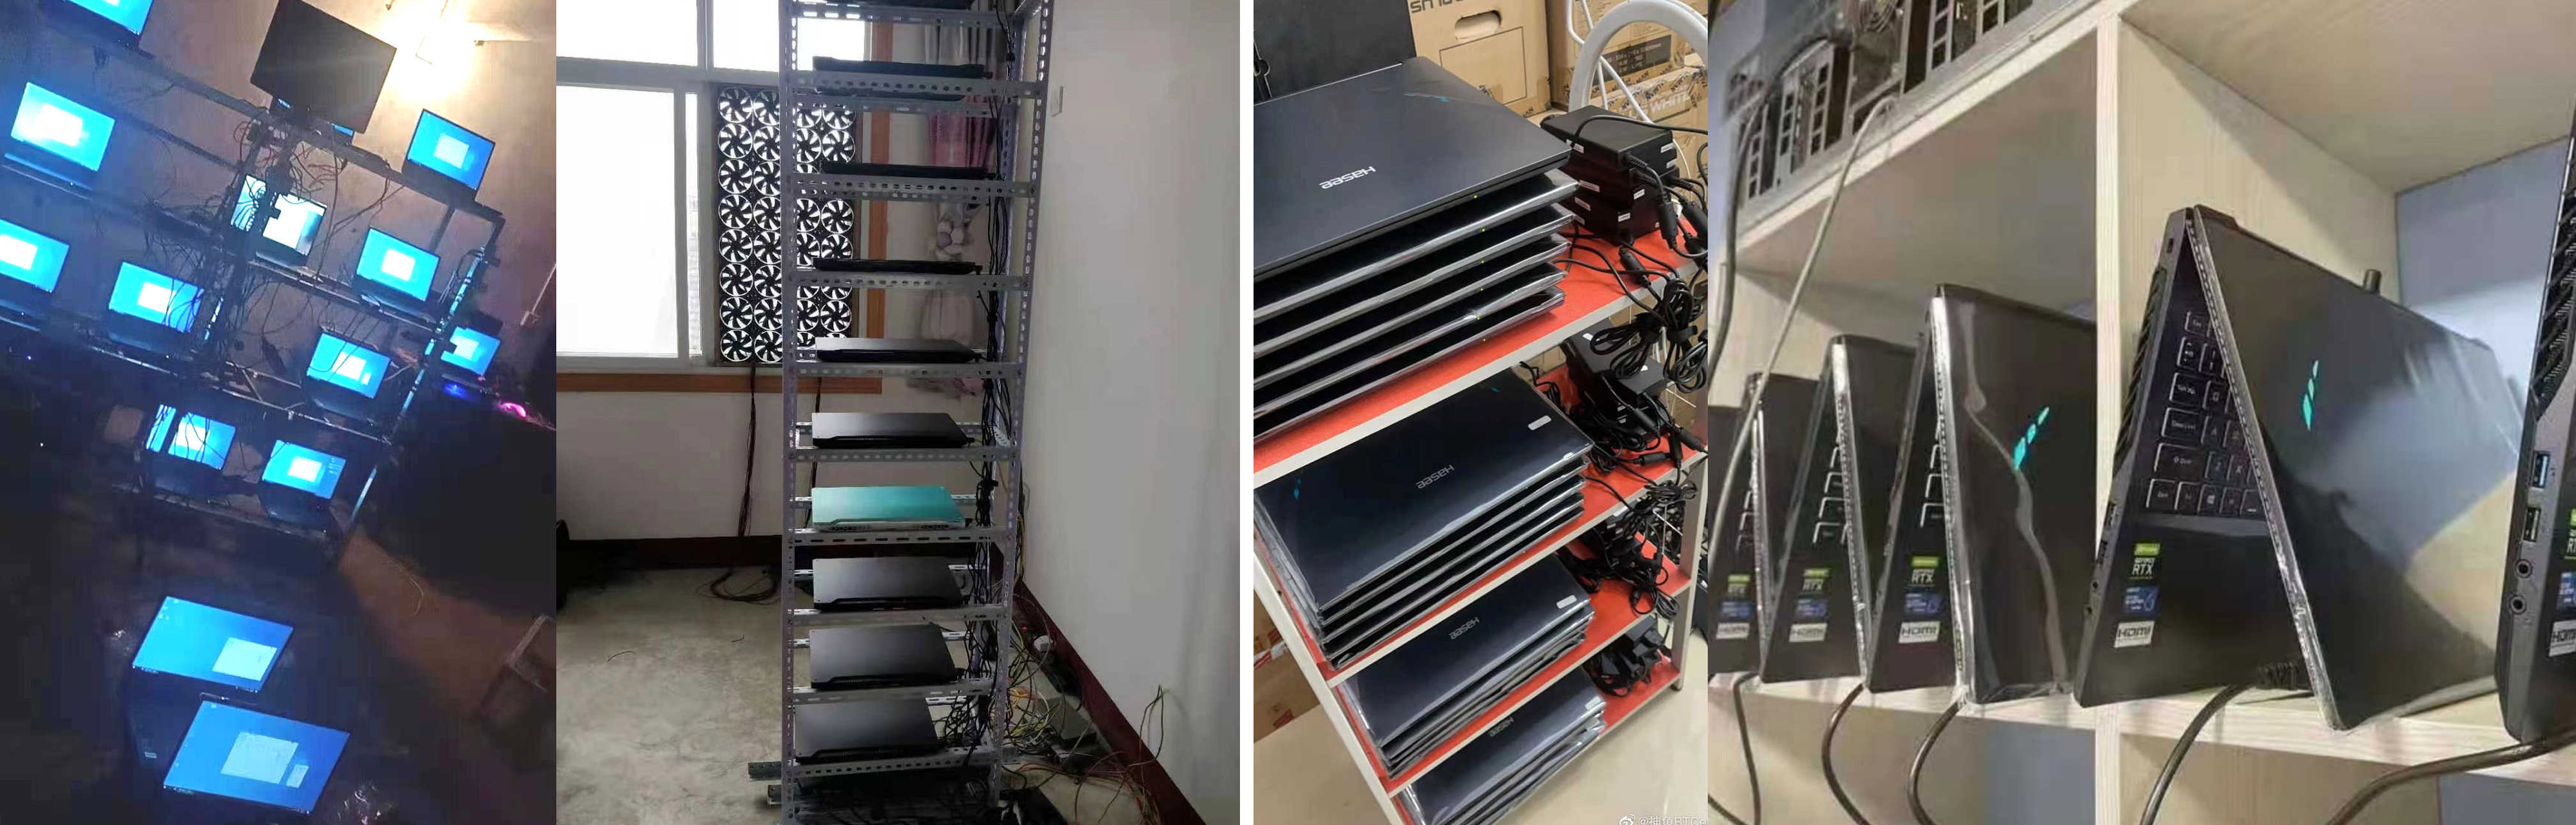 دو سری لپ تاپ RTX 3000 در قفسه در چین برای استخراج رمزارز